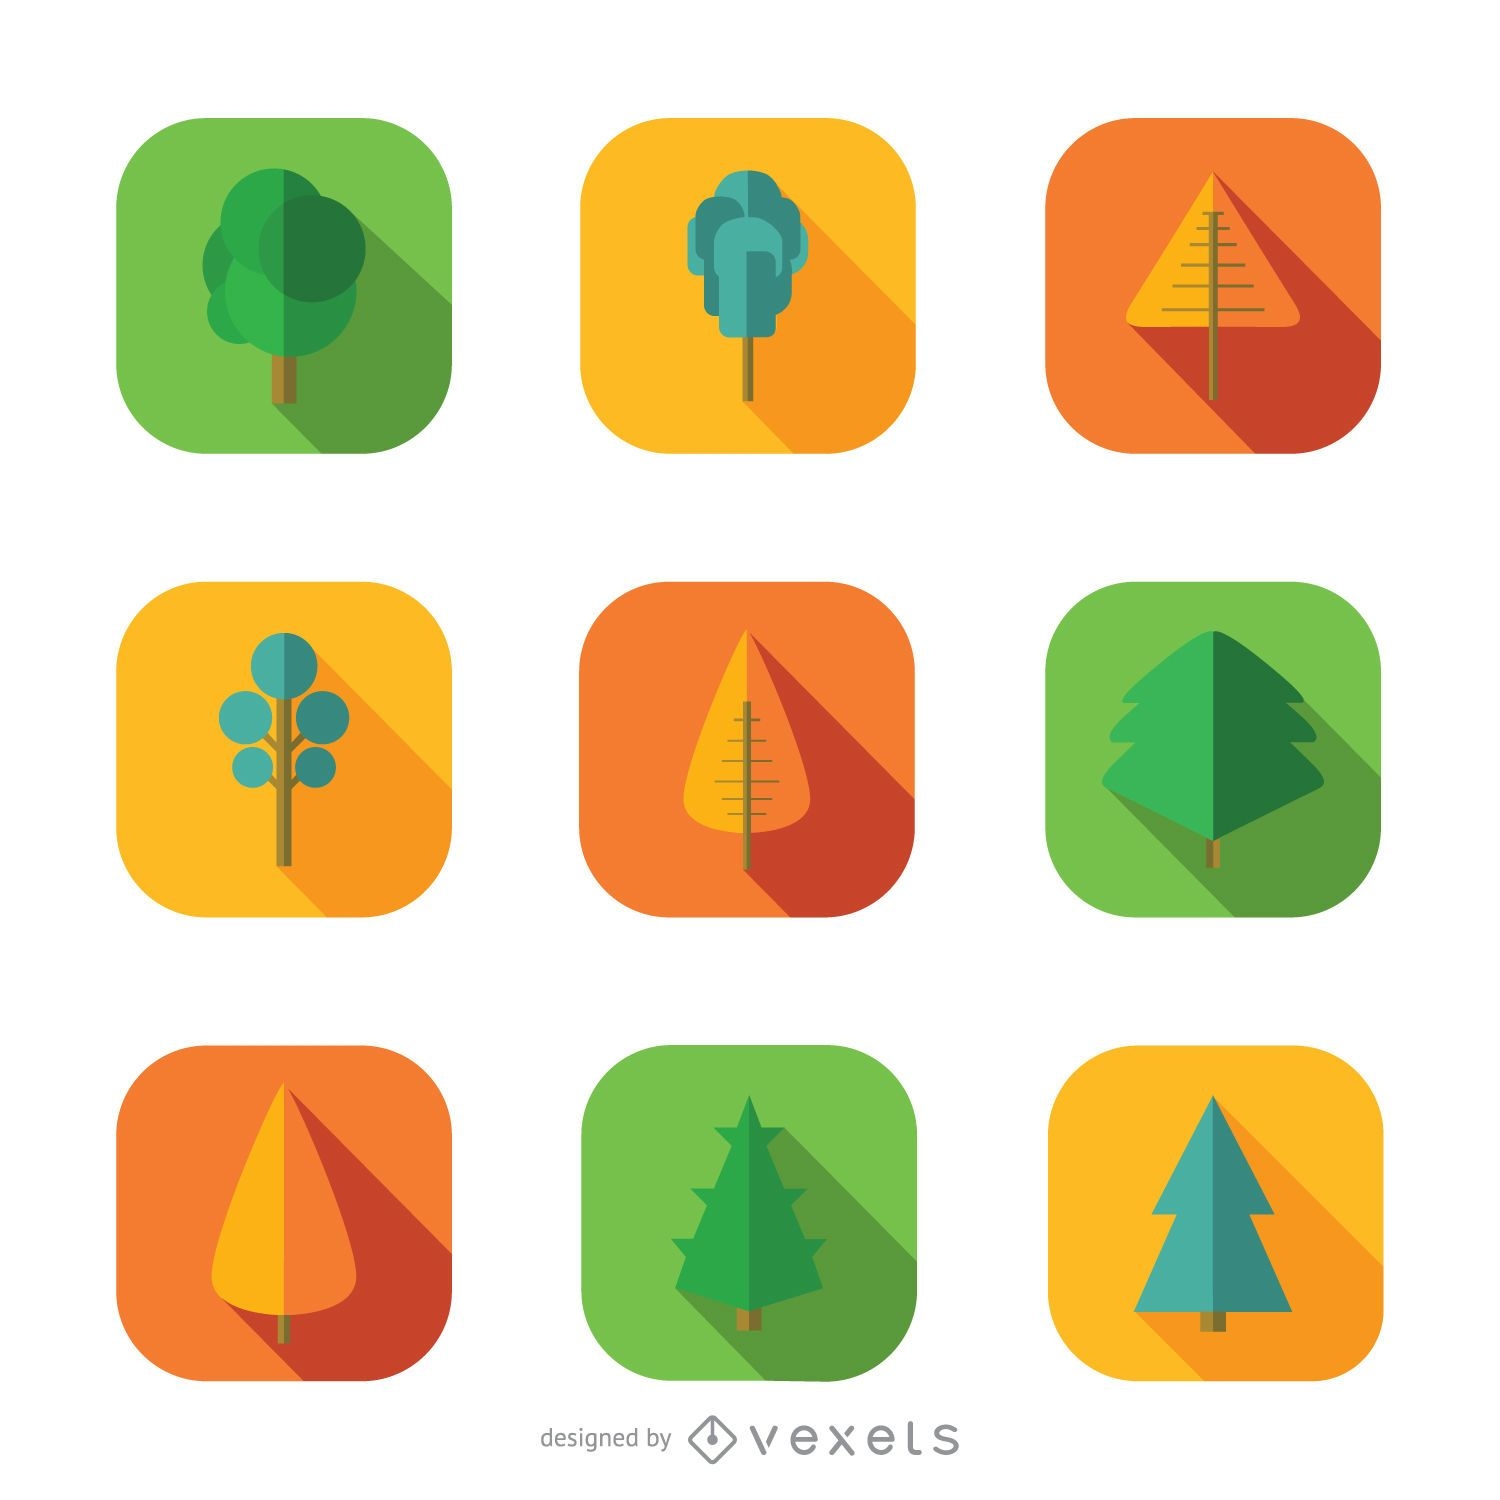 9 tree icons